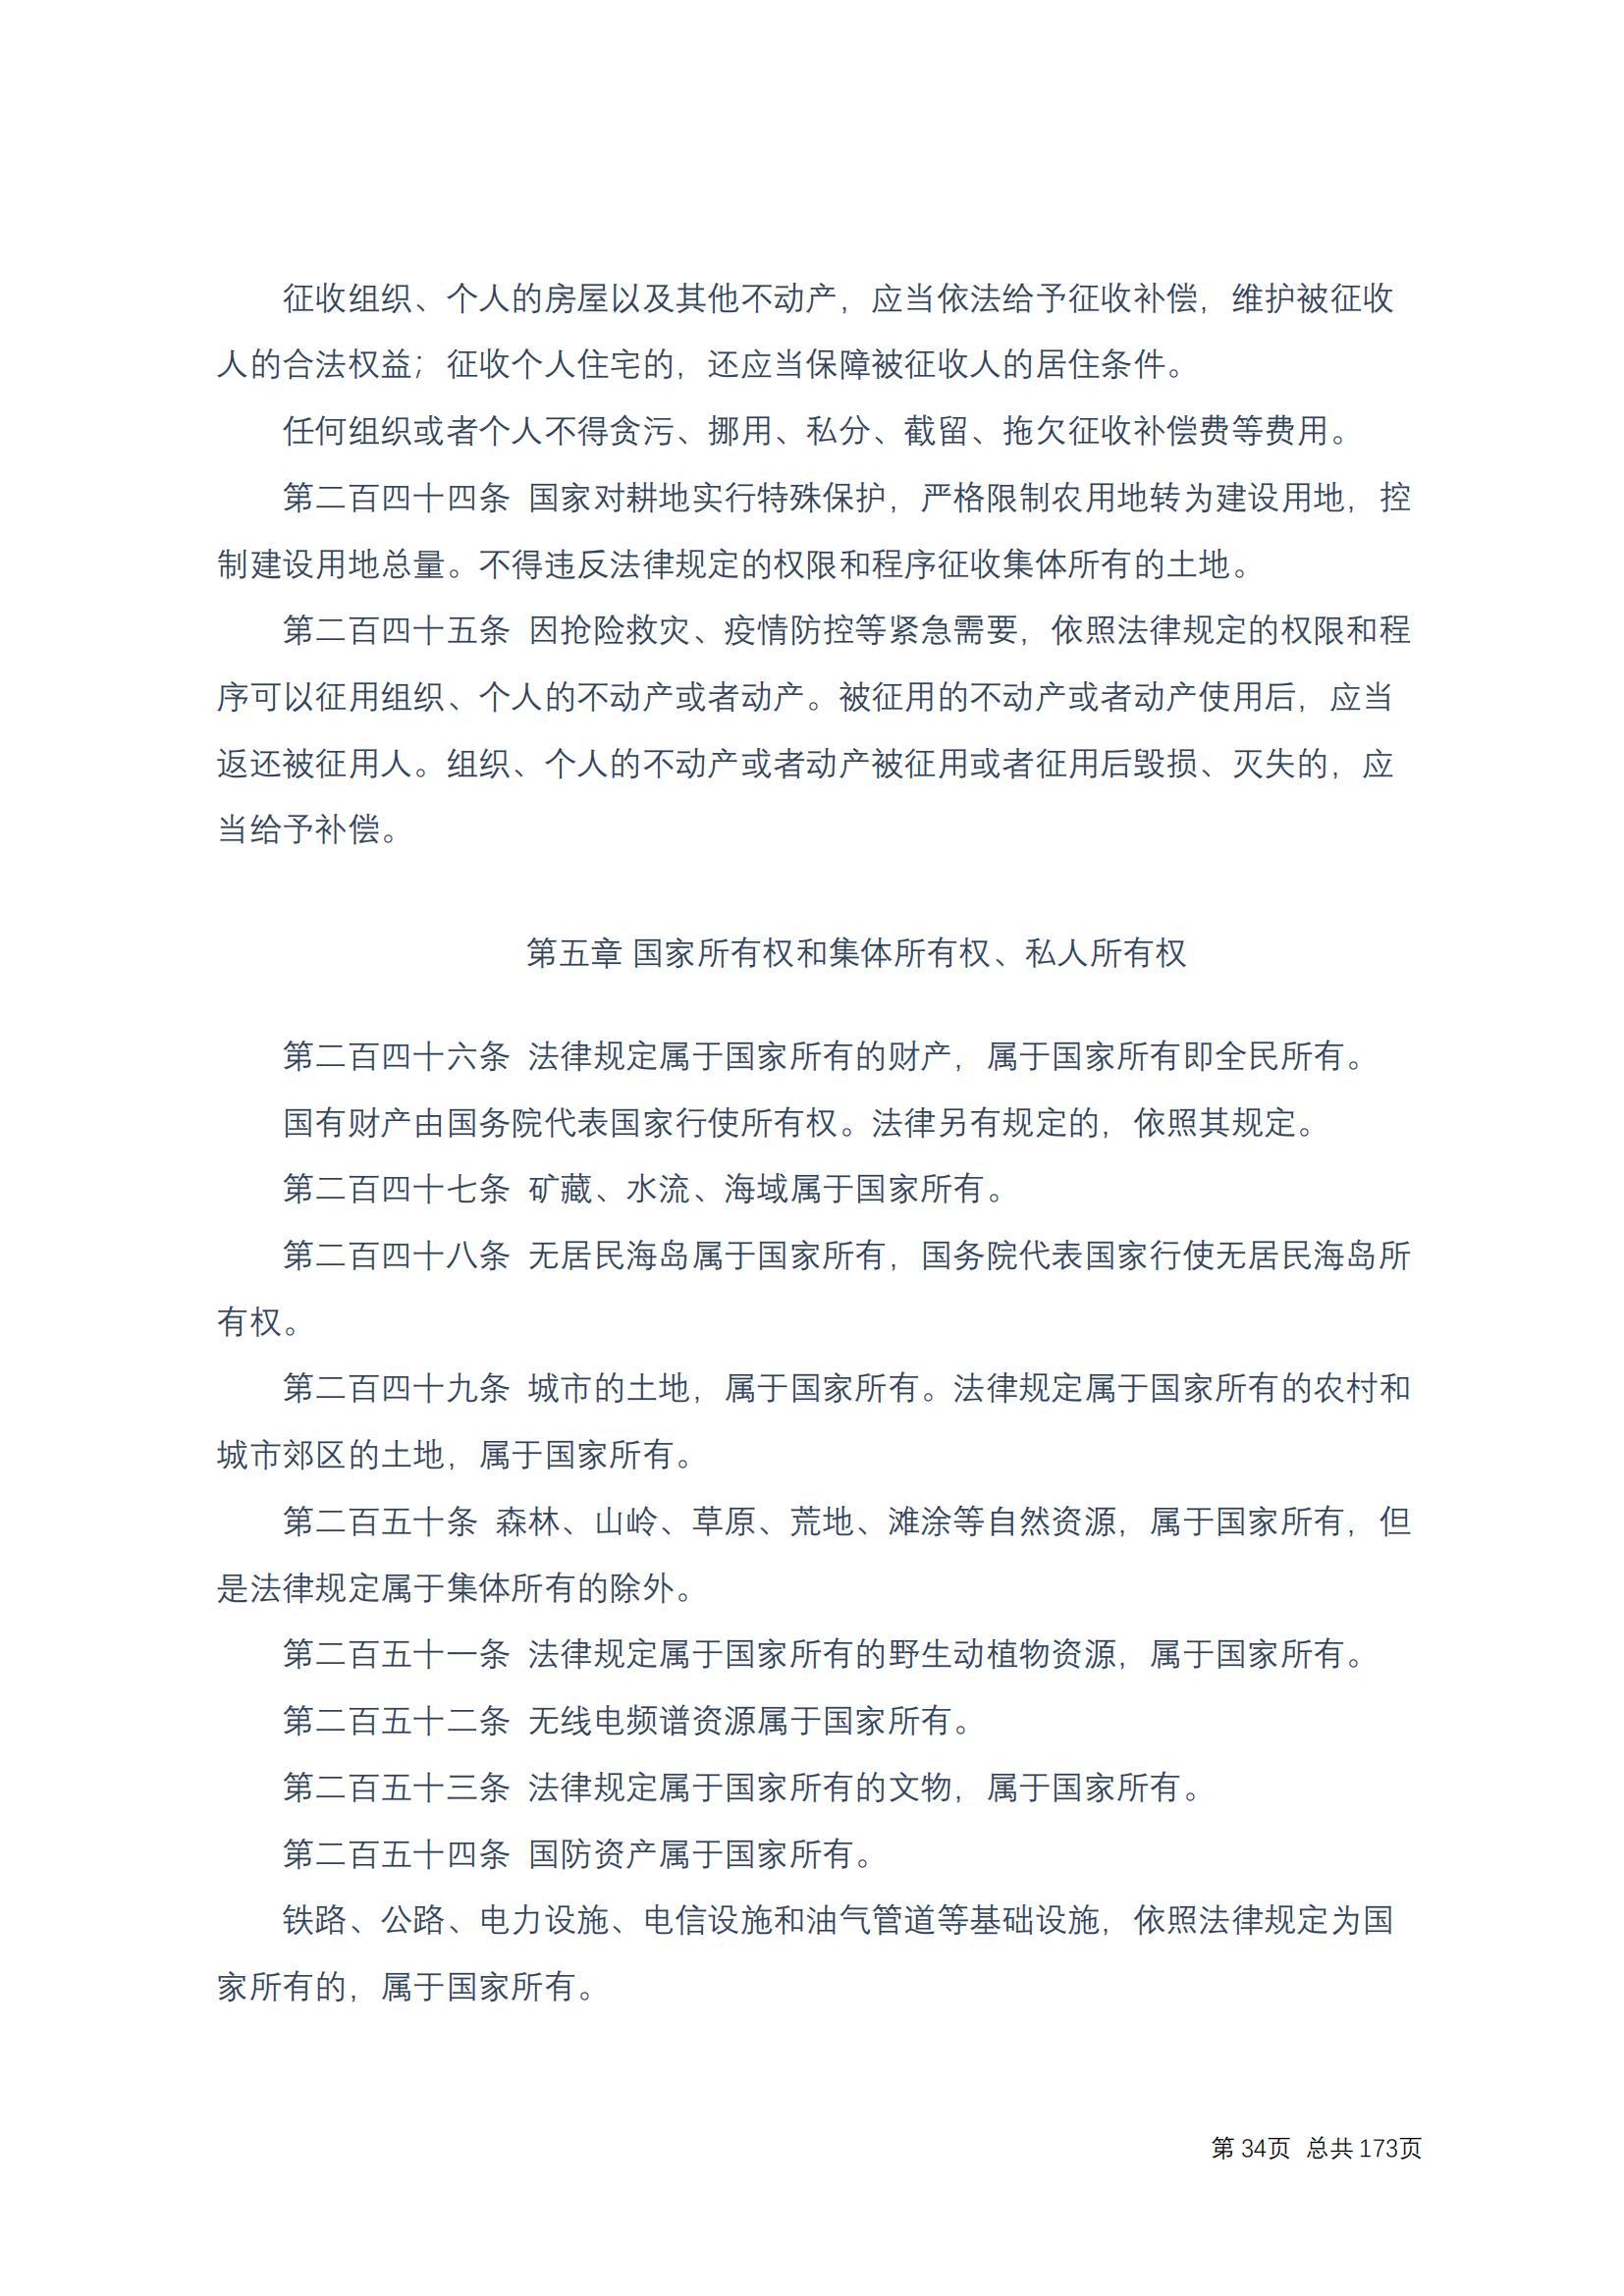 中华人民共和国民法典 修改过_33